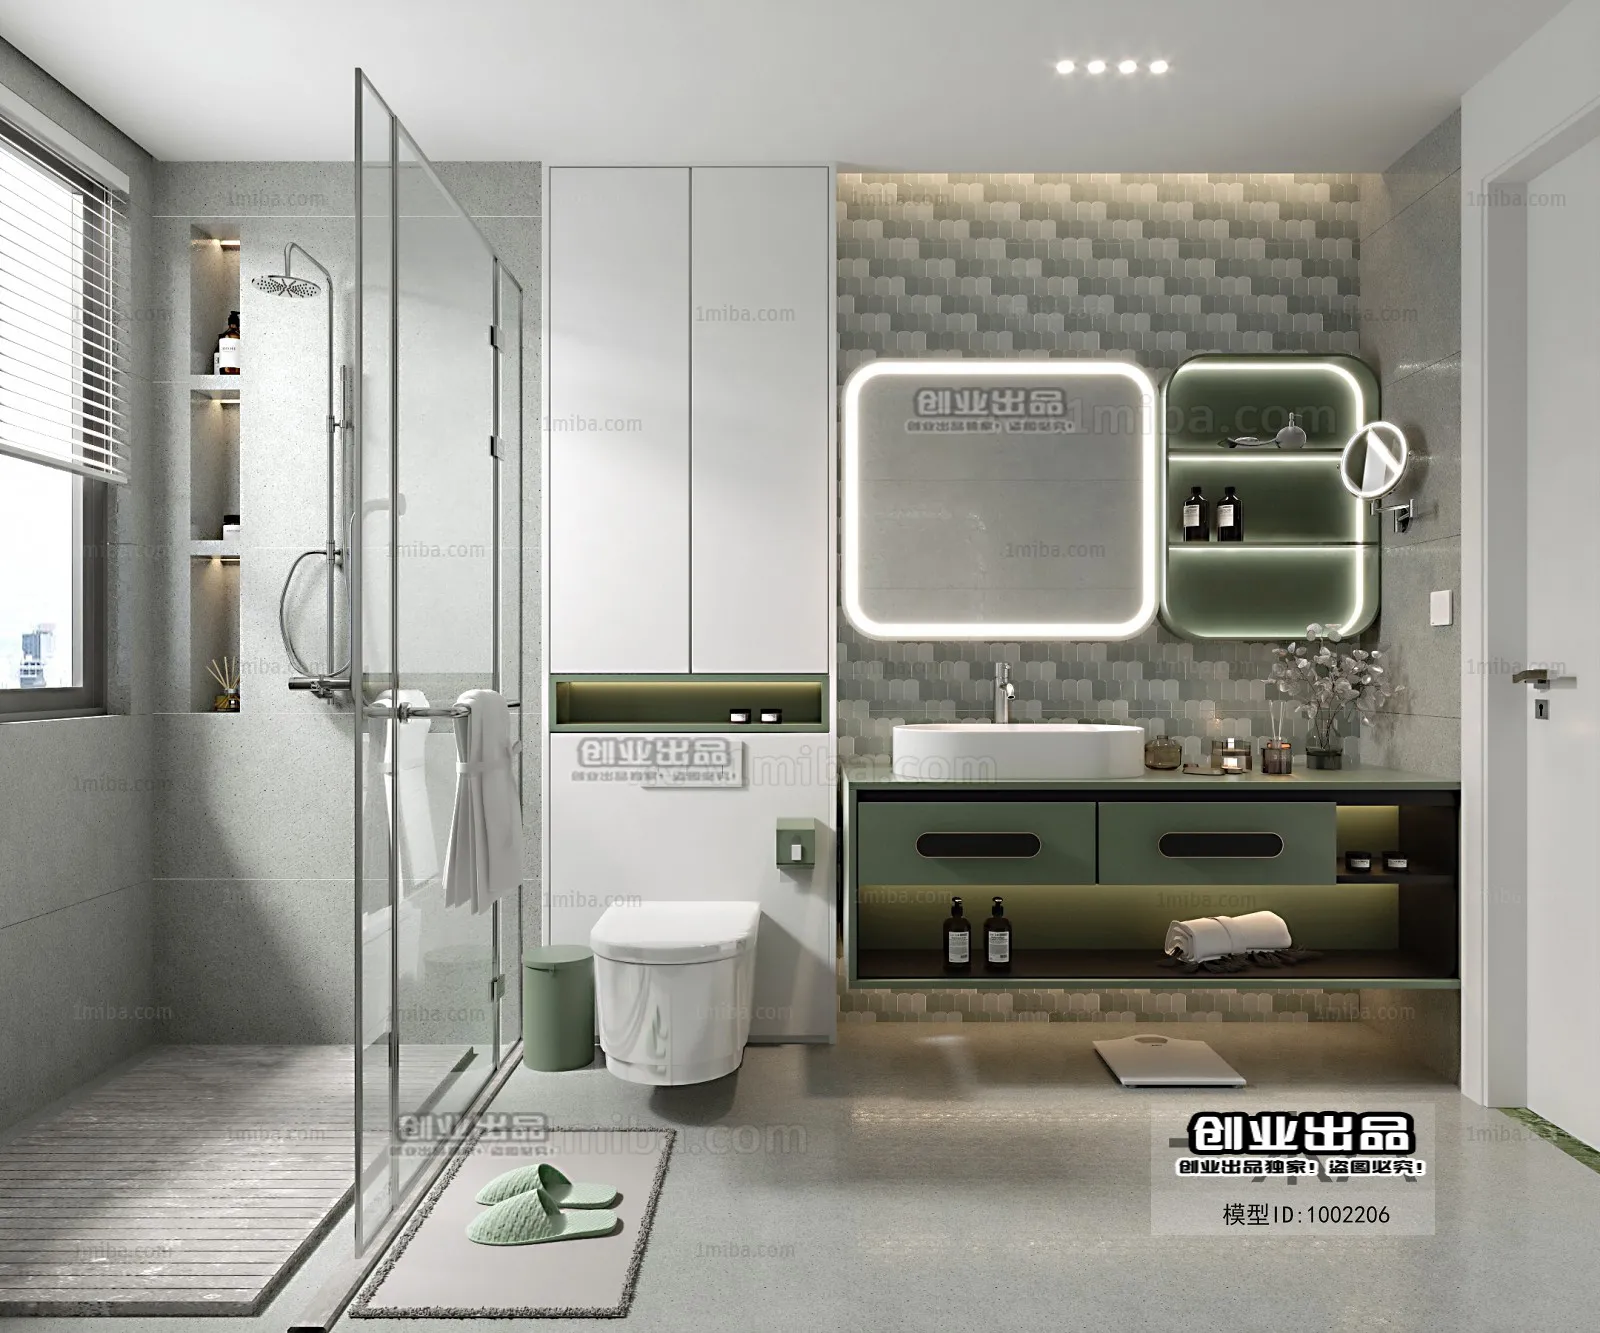 Bathroom – Scandinavian architecture – 009